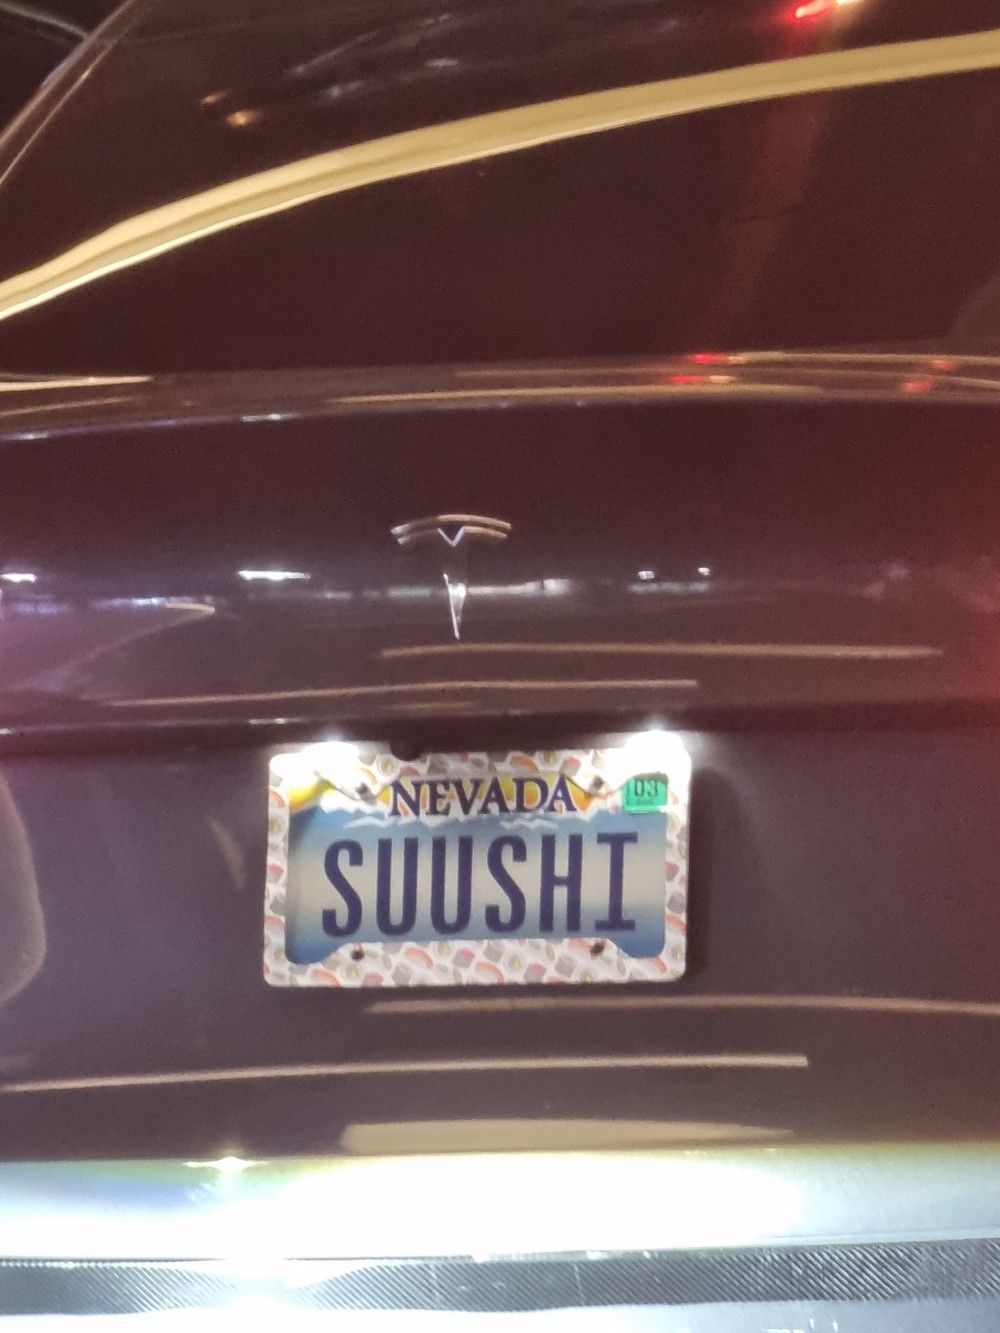 Tesla Uber with Suushi plate